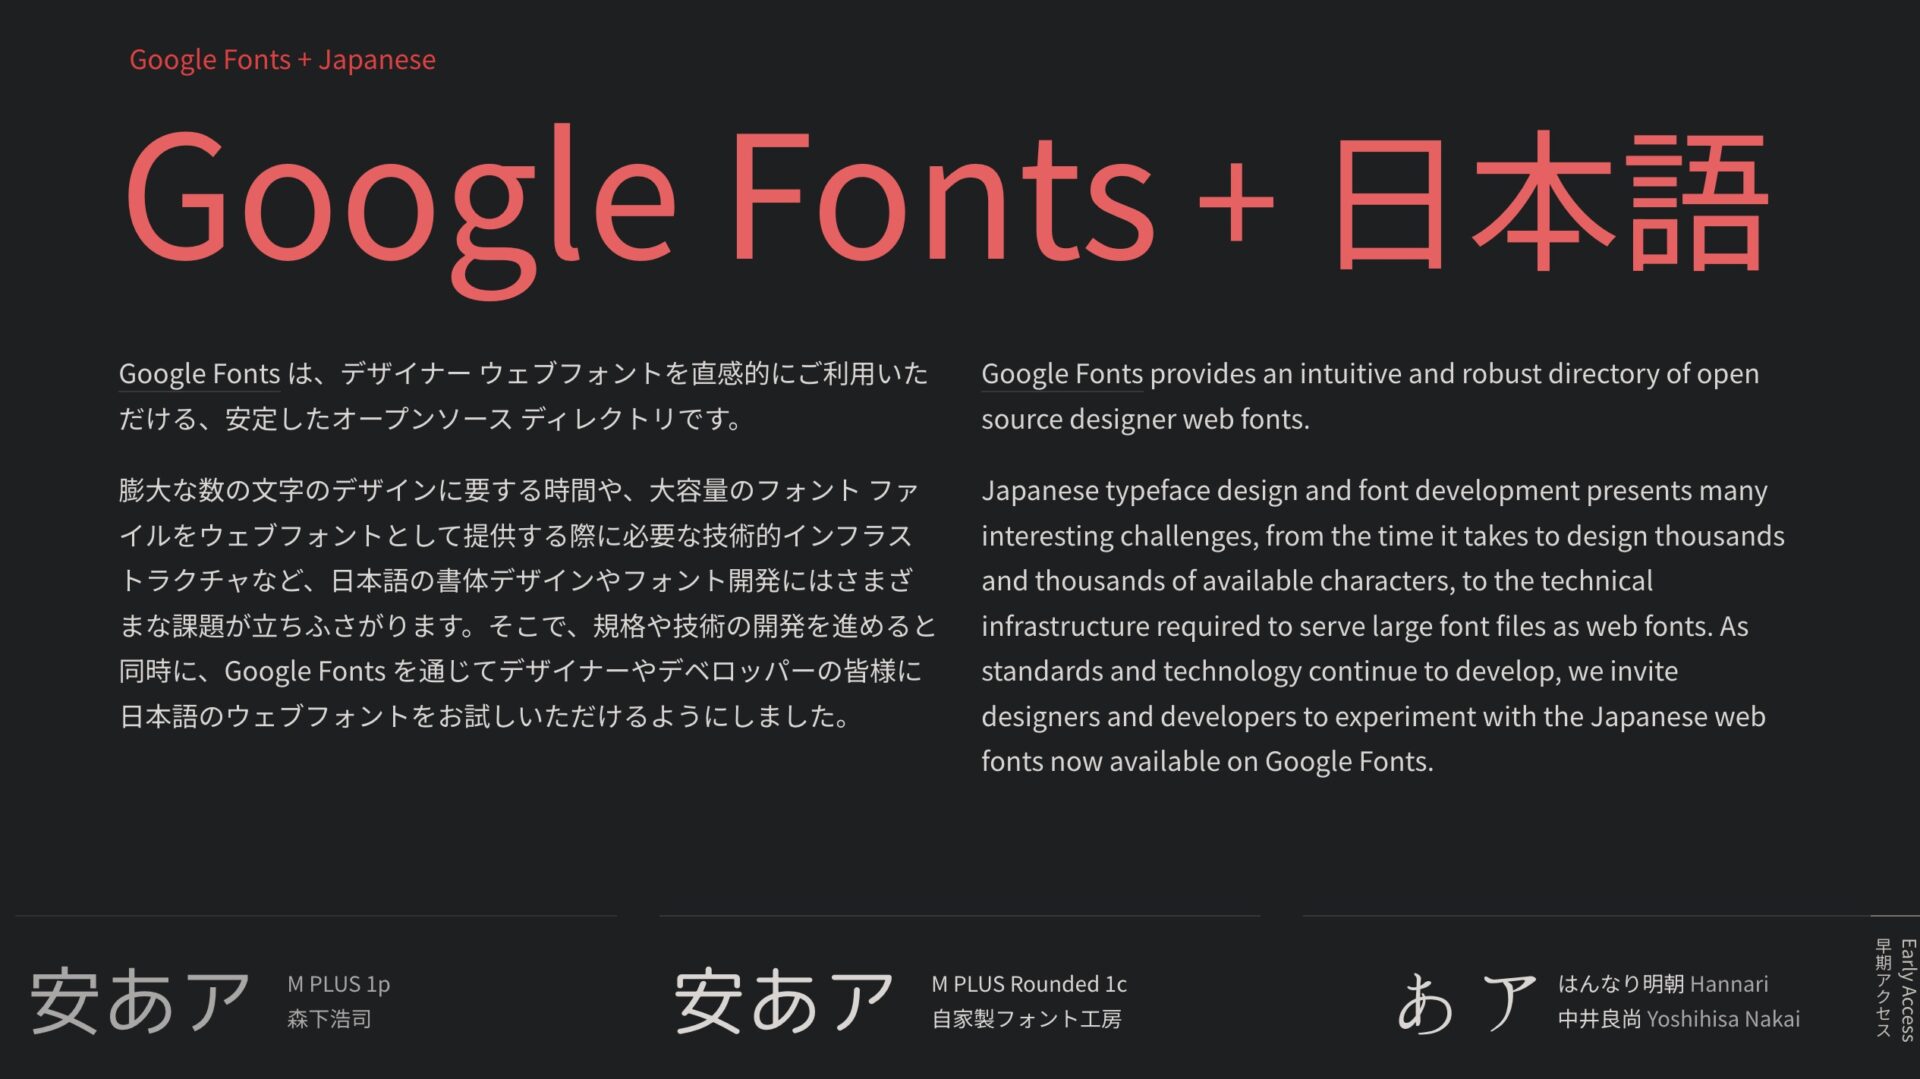 Google Fonts + Japanese • Google Fonts + 日本語のサイトのスクショ。